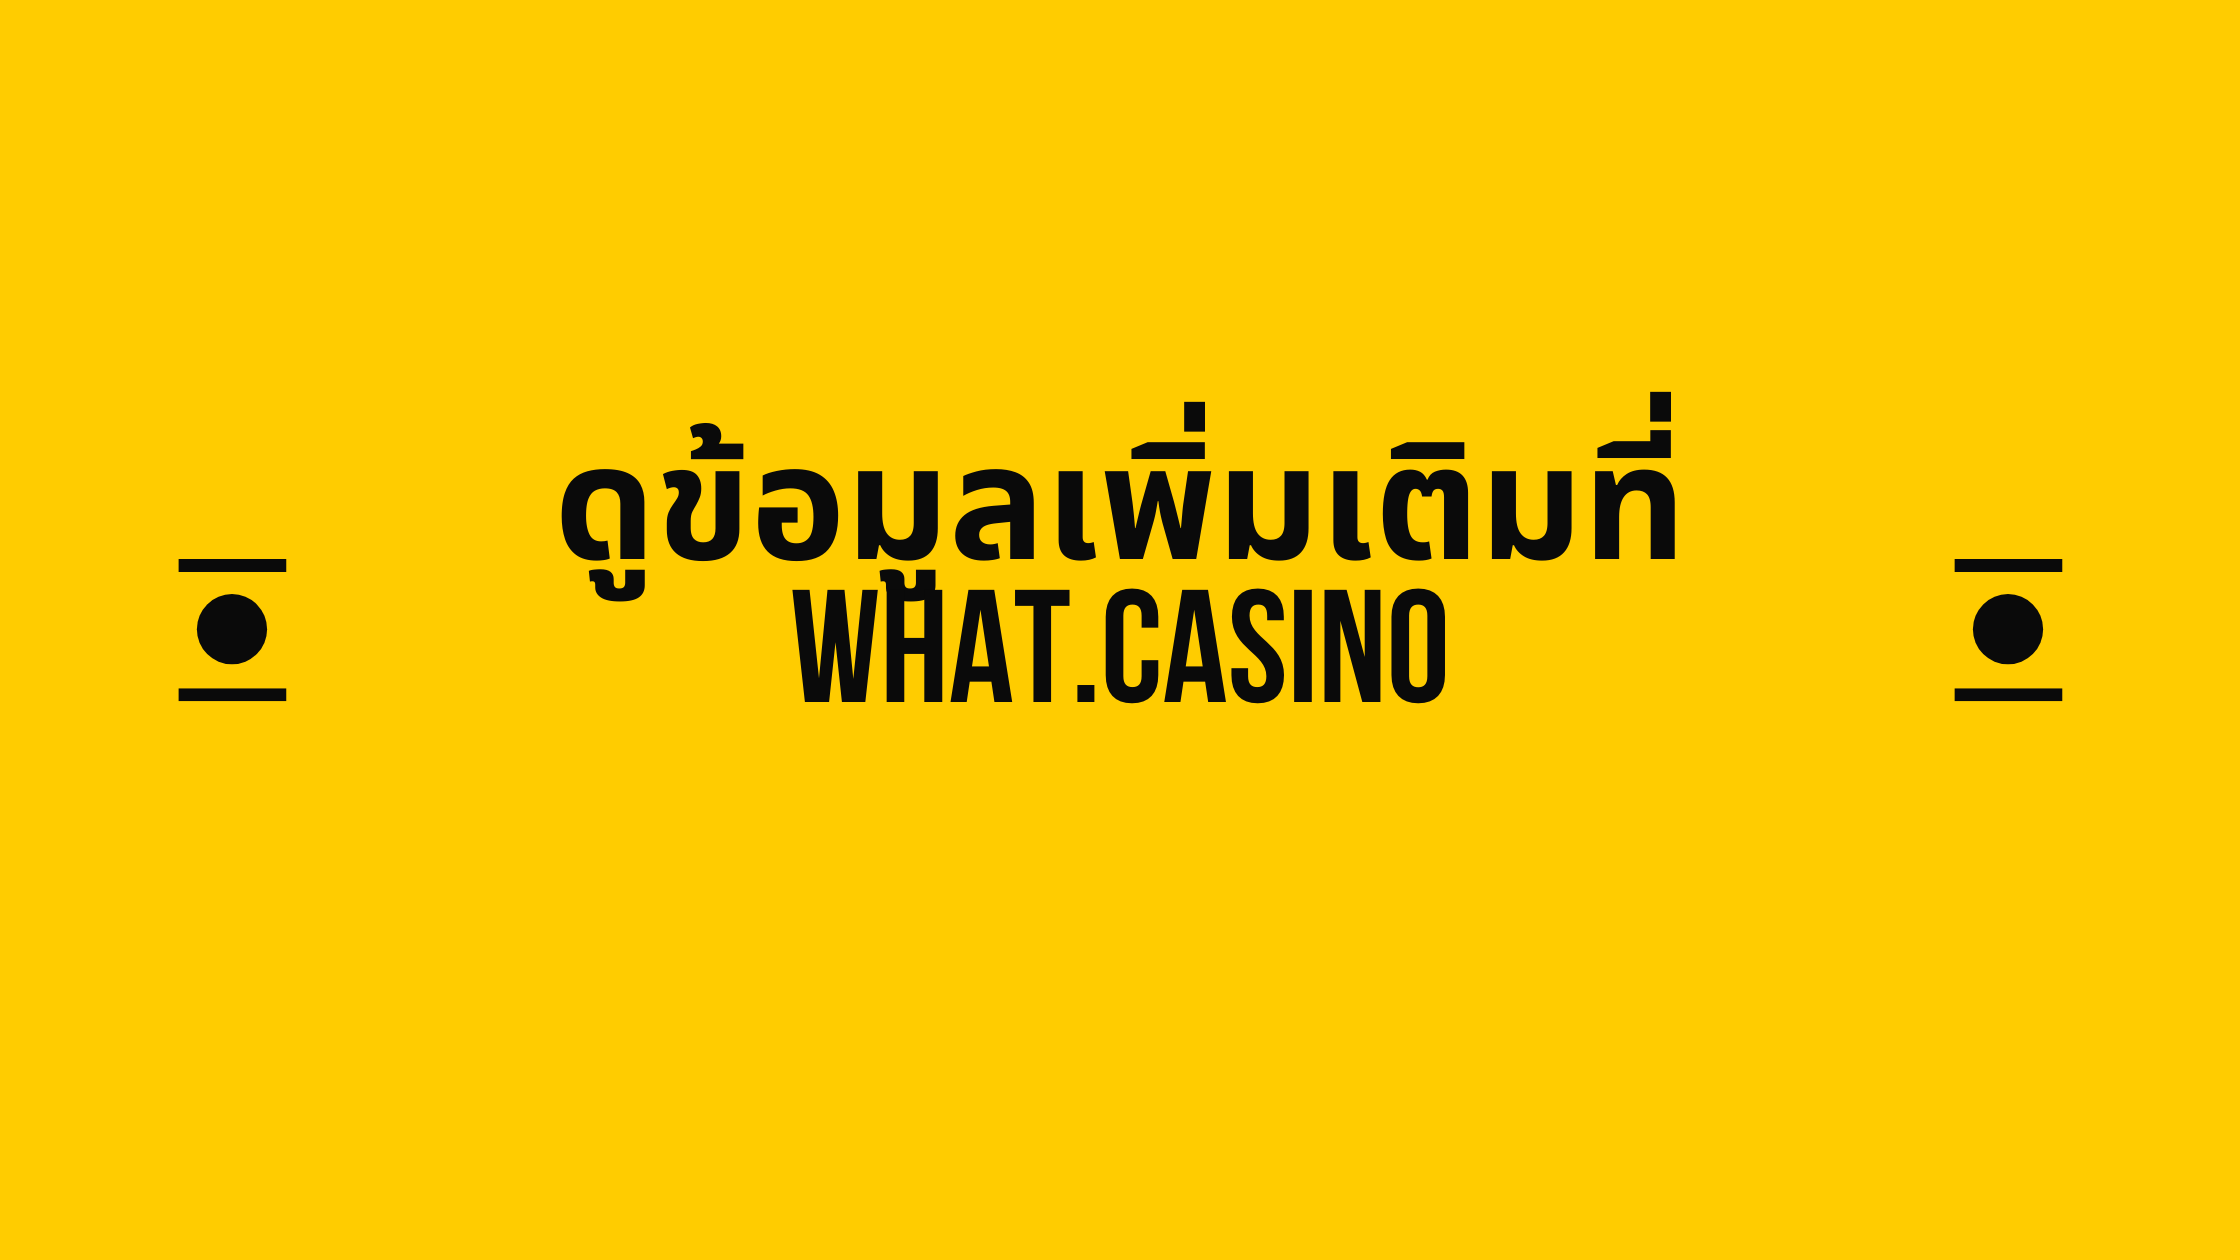 ดูข้อมูลเพิ่มเติมที่ what.casino